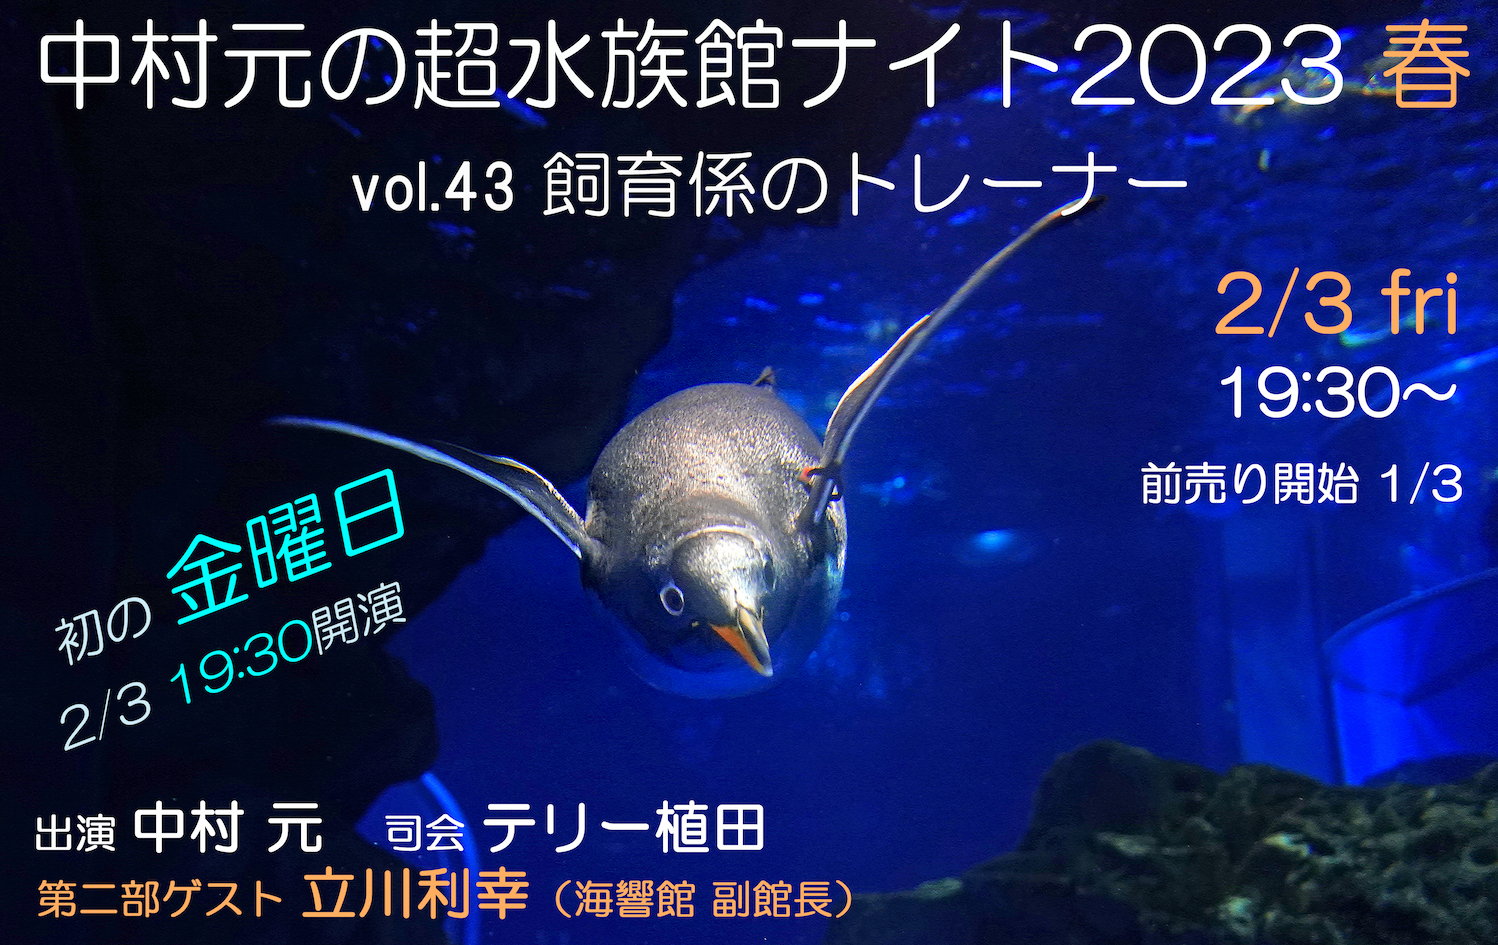 中村元の超水族館ナイト 2023春 東京カルチャーカルチャー｜あらゆるものをイベントにできる飲食スタイルのイベントハウス